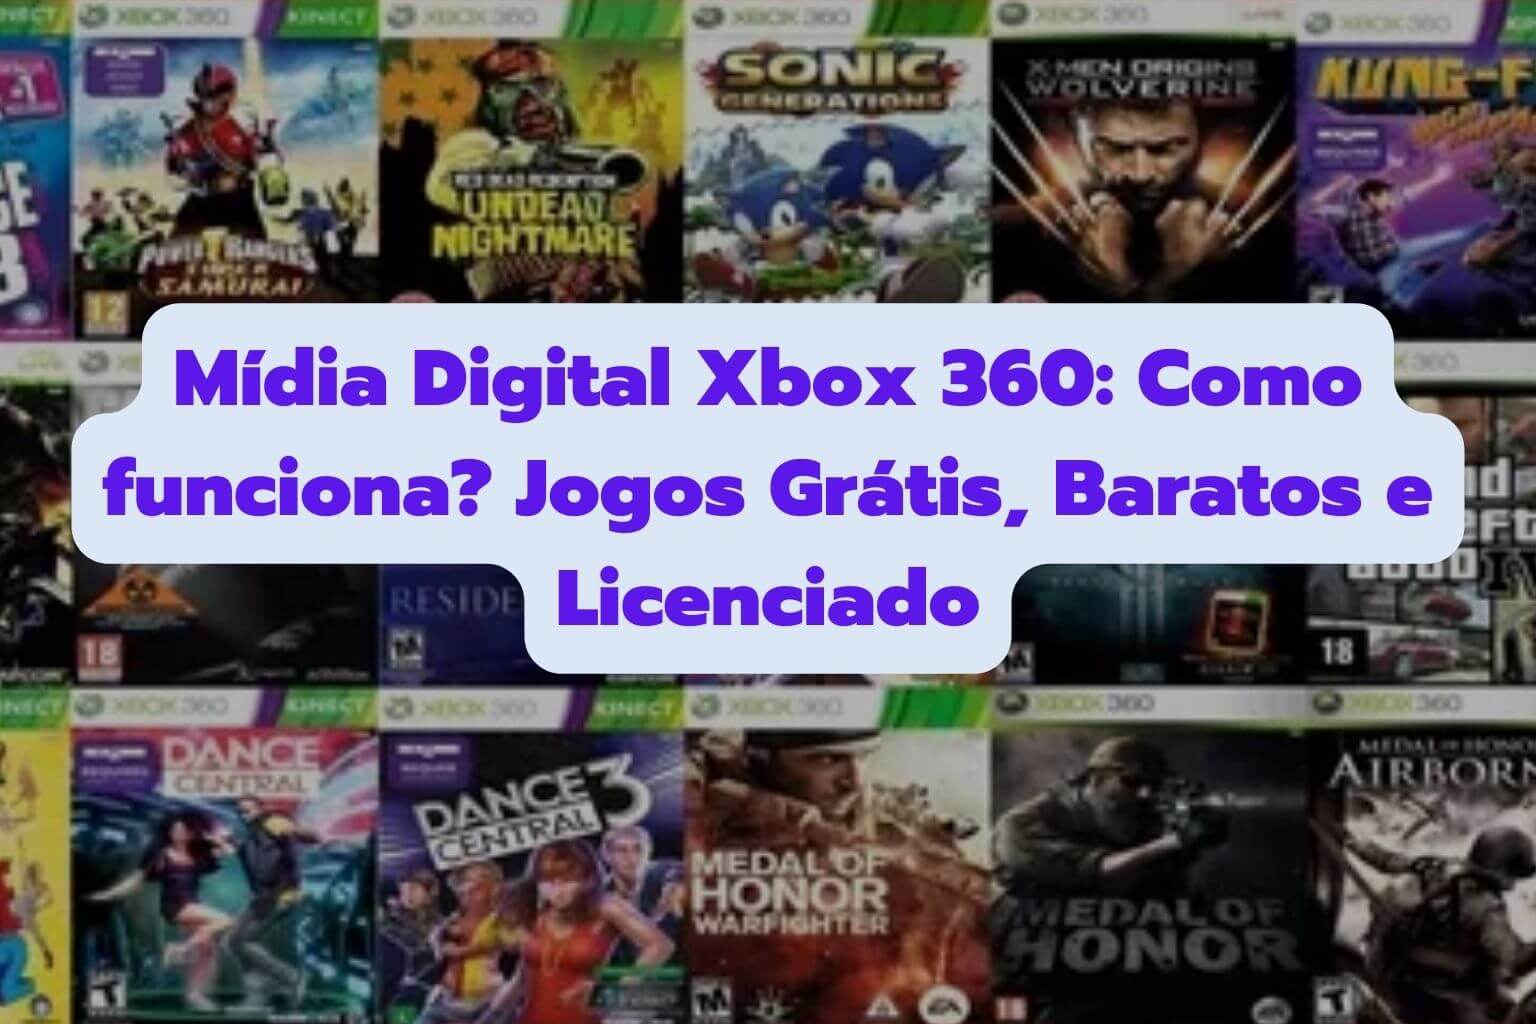 Mídia Digital Xbox 360: Como funciona? + Jogos Grátis e Baratos